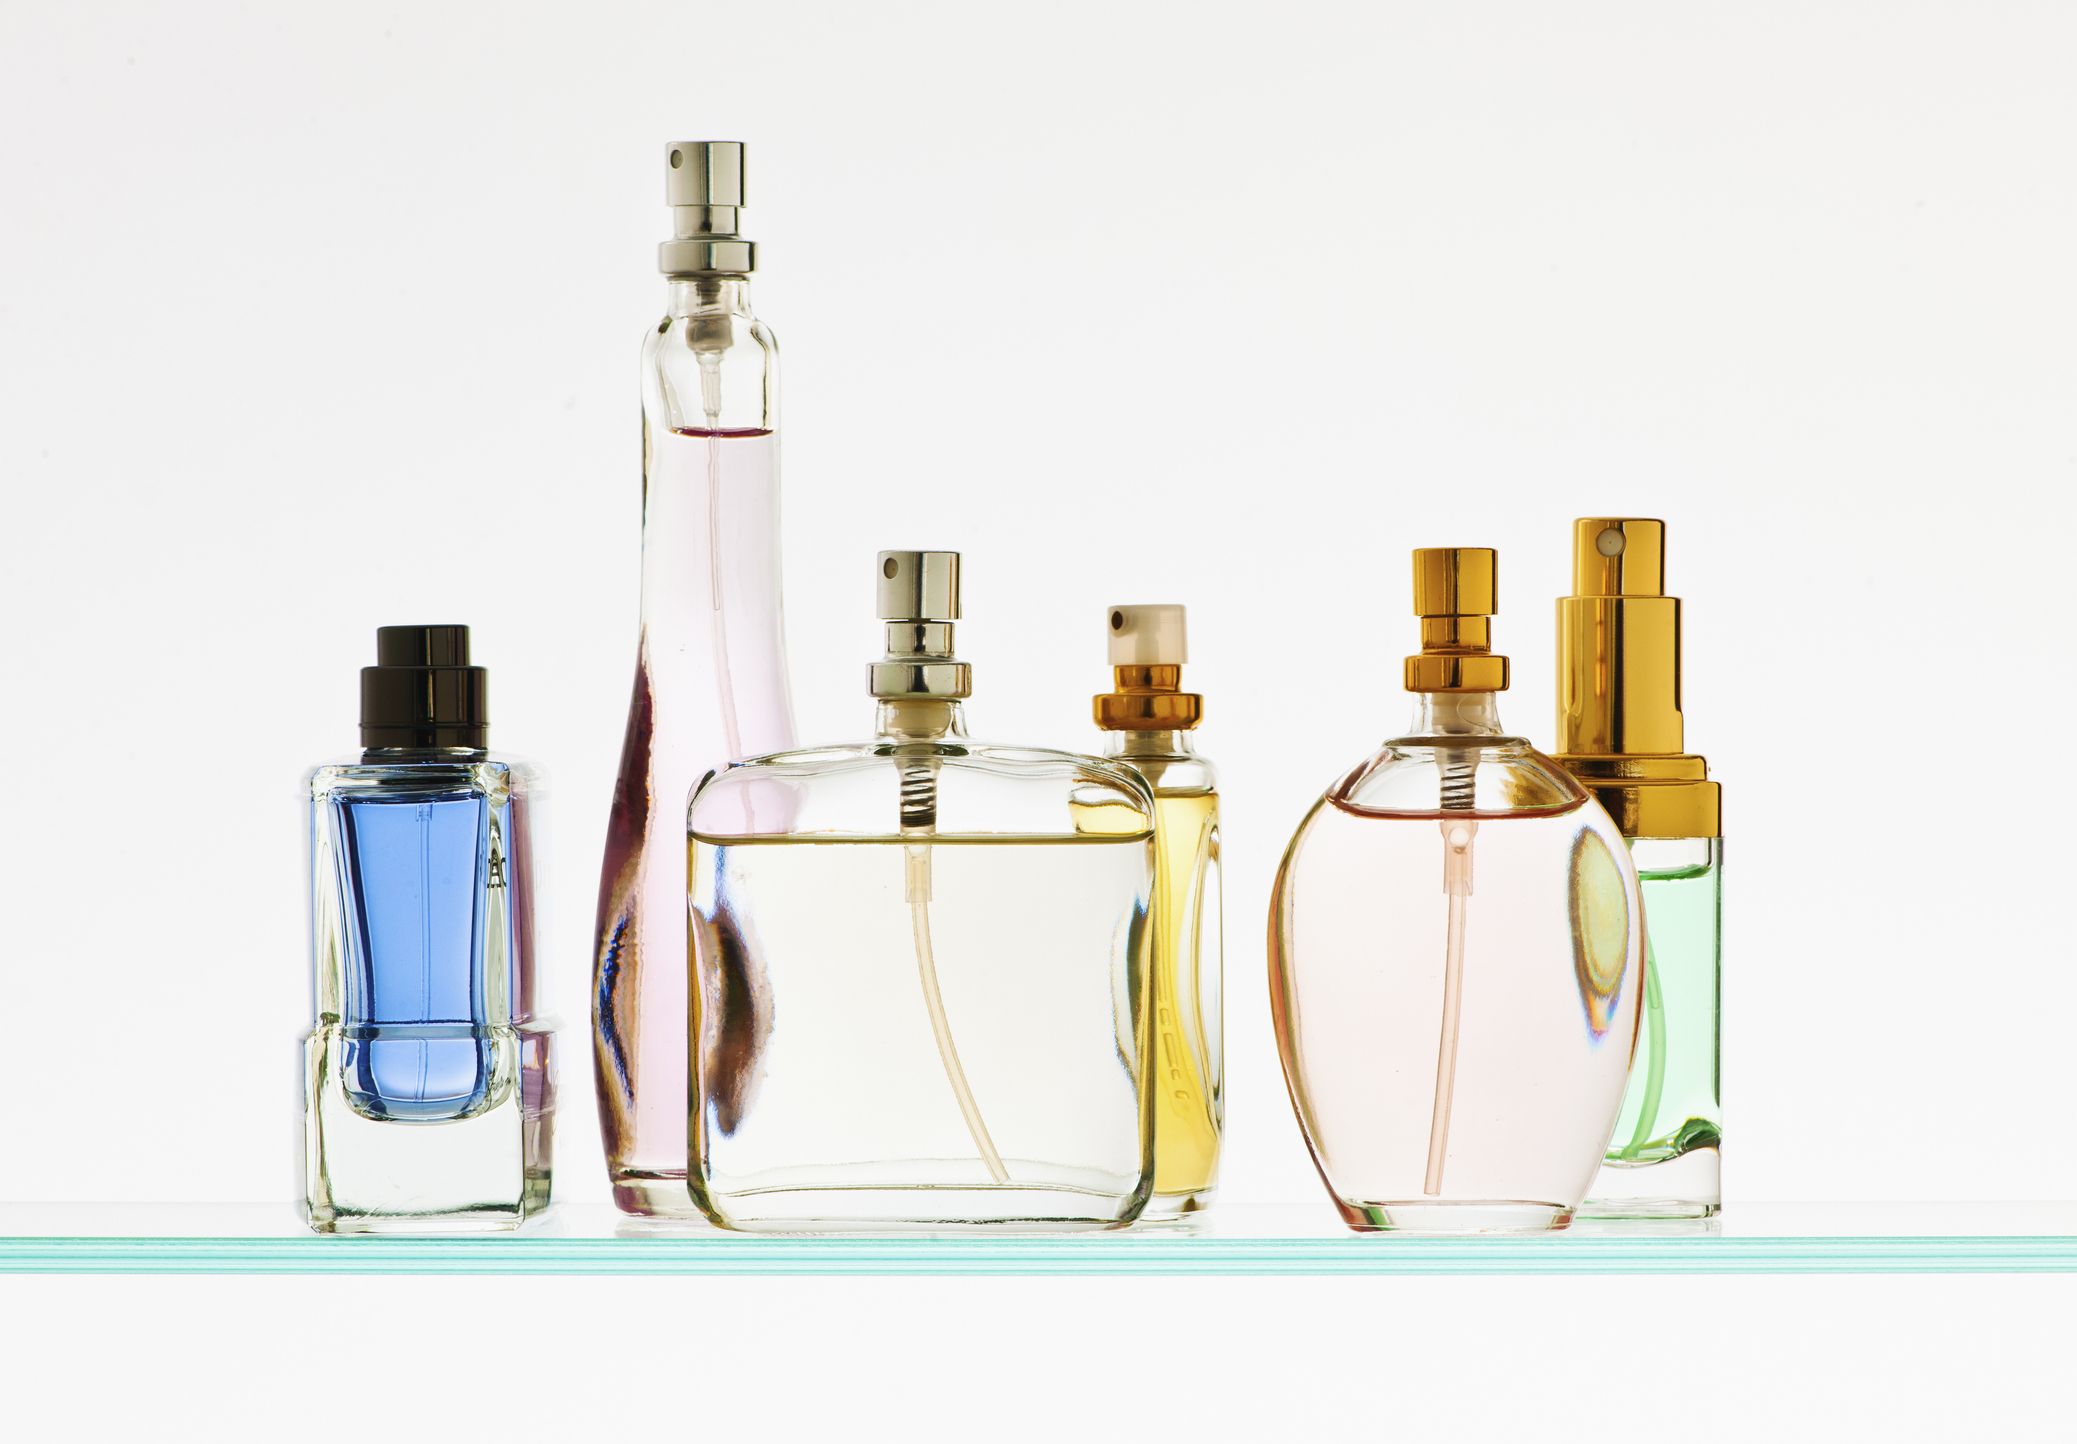 Jasmin Bonheur Guerlain perfume - a new fragrance for women and